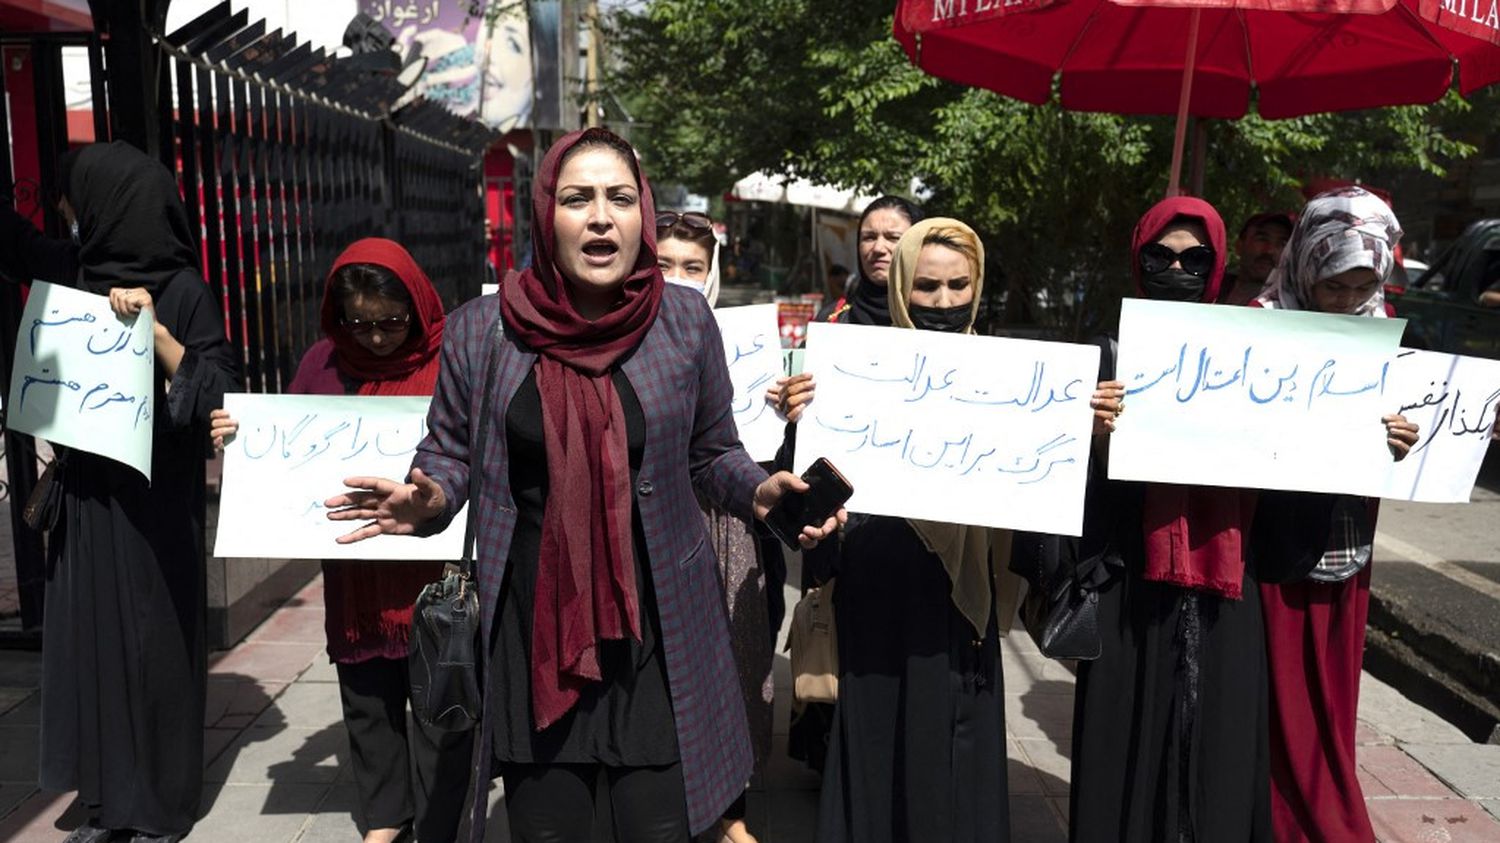 Afghanistan: a dozen women demonstrate in Kabul against the full veil
